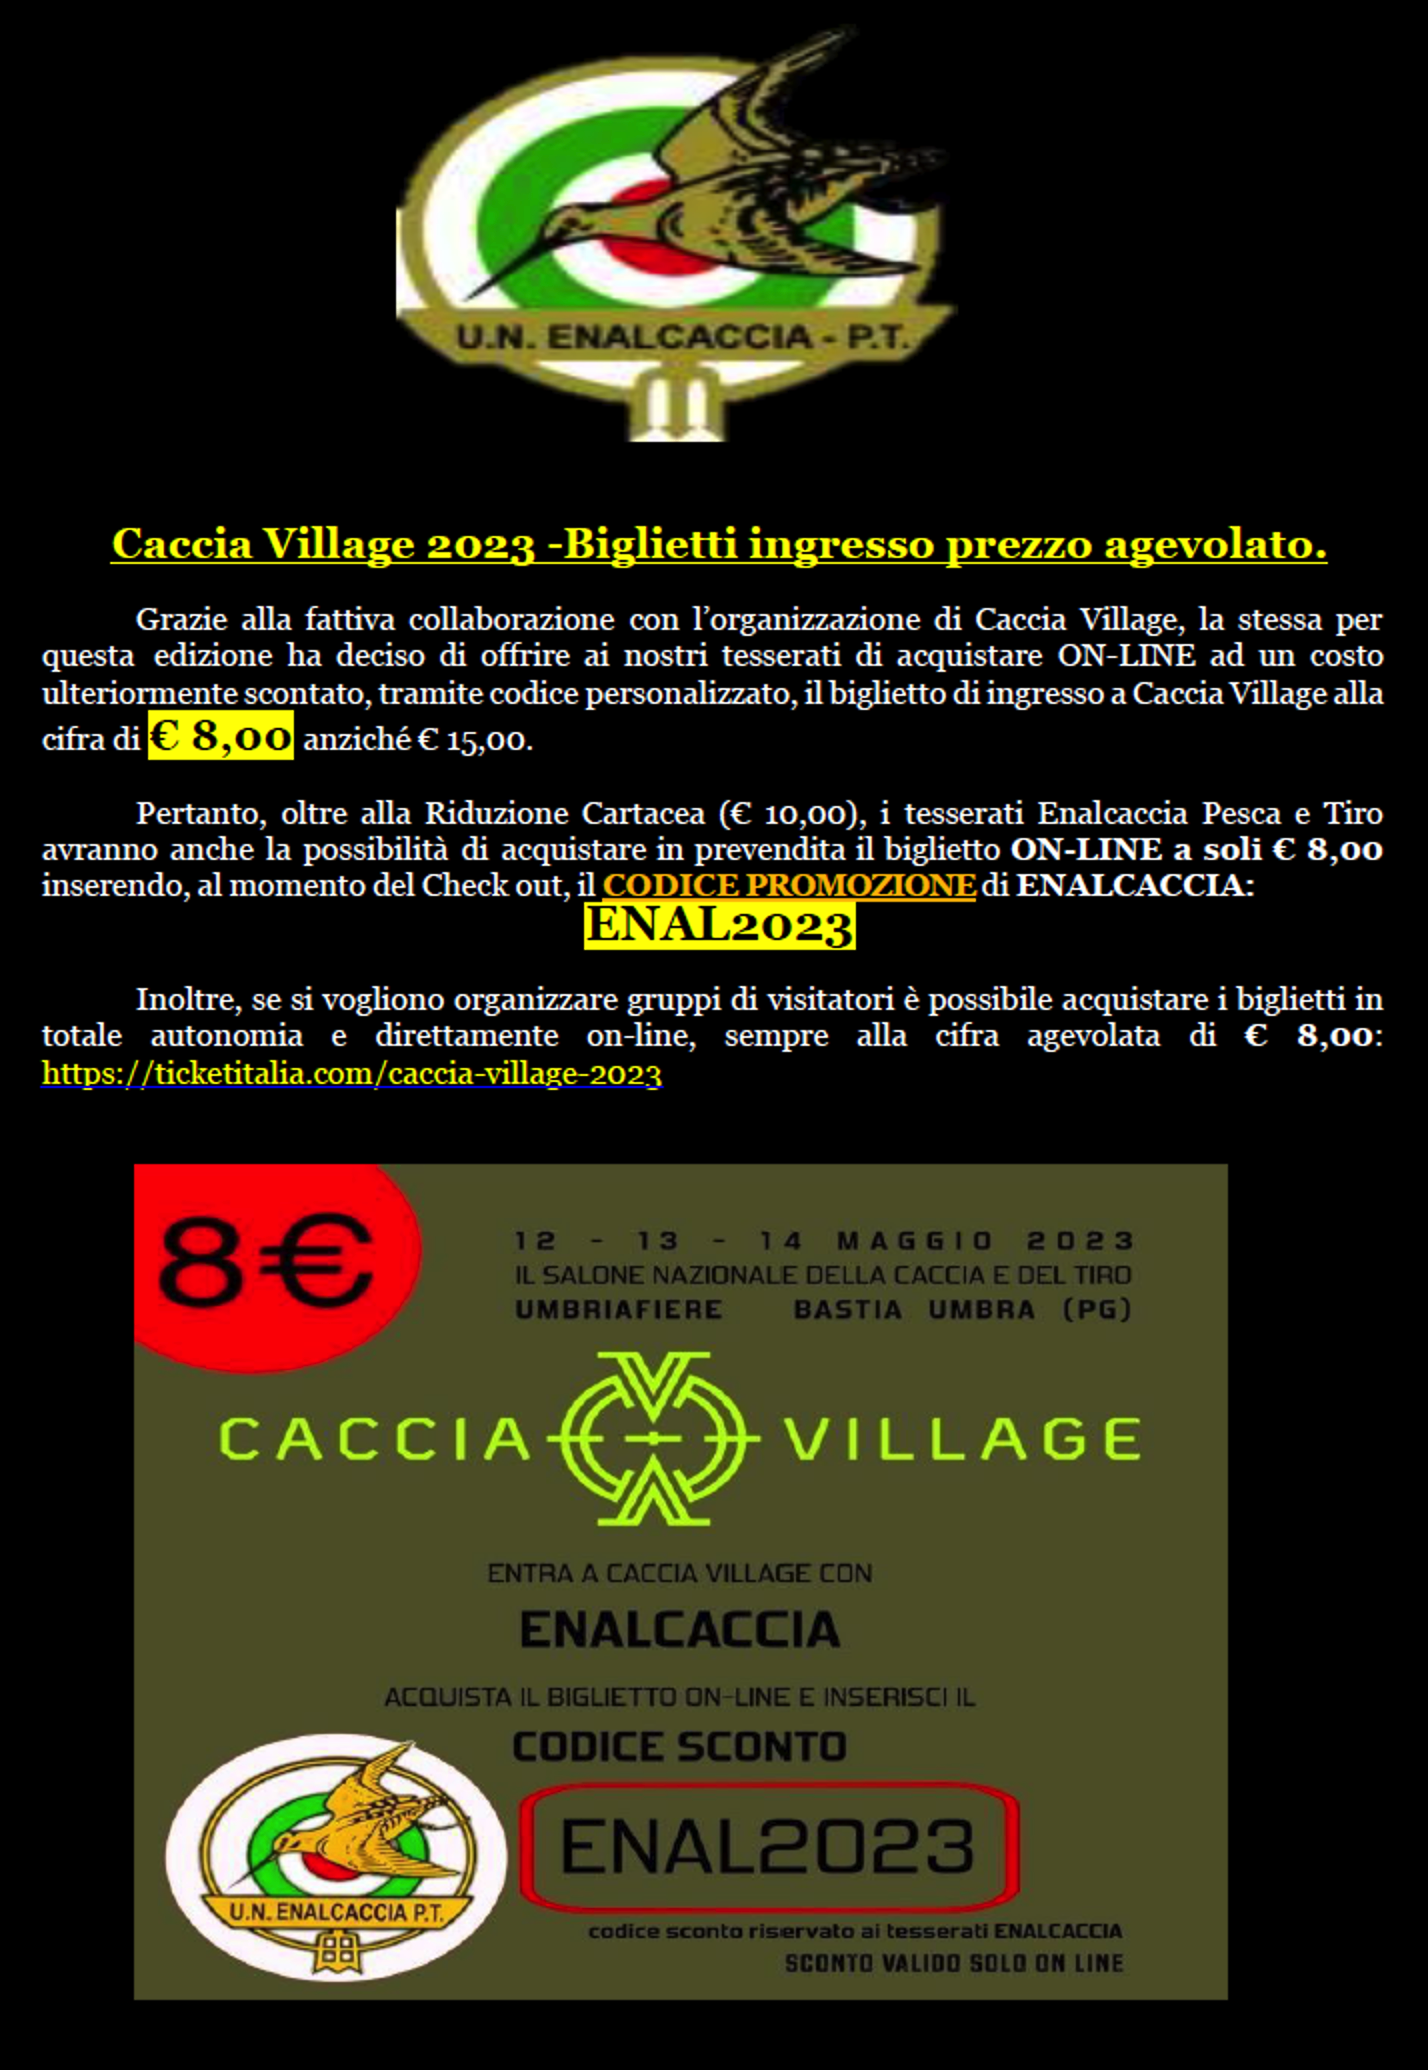 Caccia Village 2023 - Biglietti ingresso prezzo agevolato